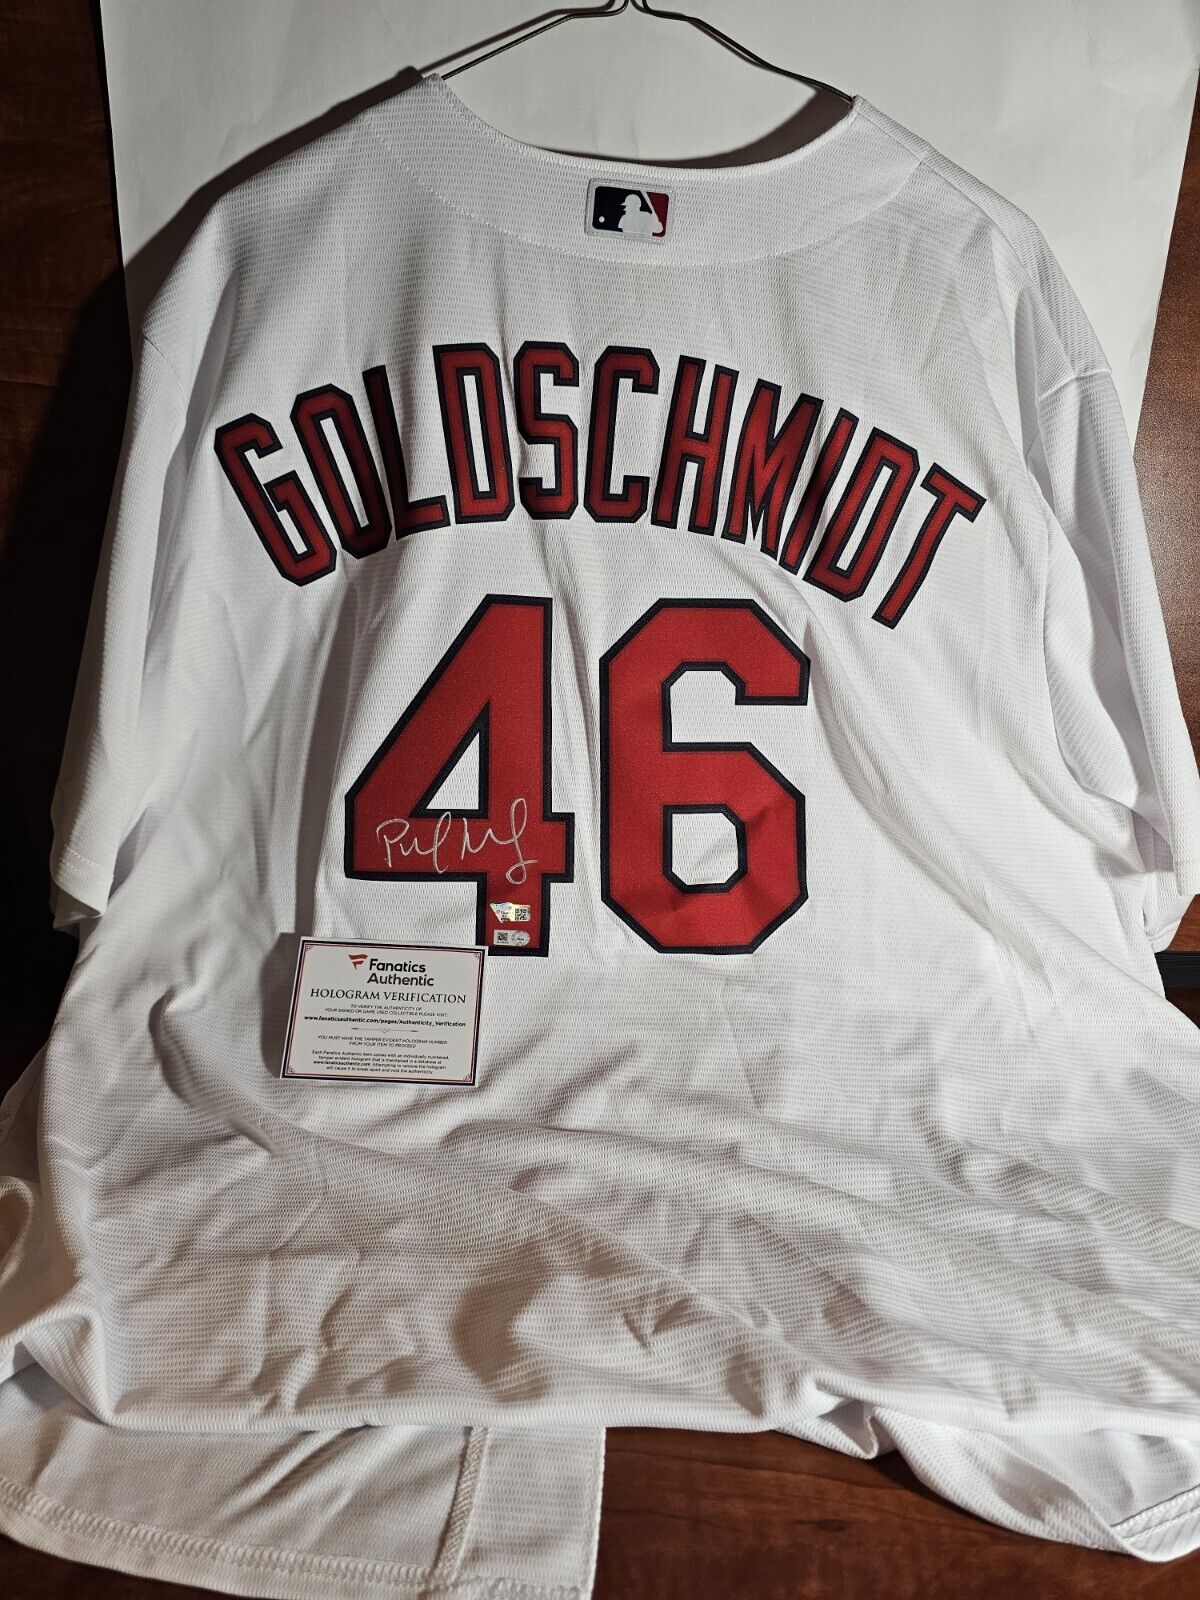 Fanatics Authentic Paul Goldschmidt St. Louis Cardinals Autographed Cream Nike Authentic Jersey